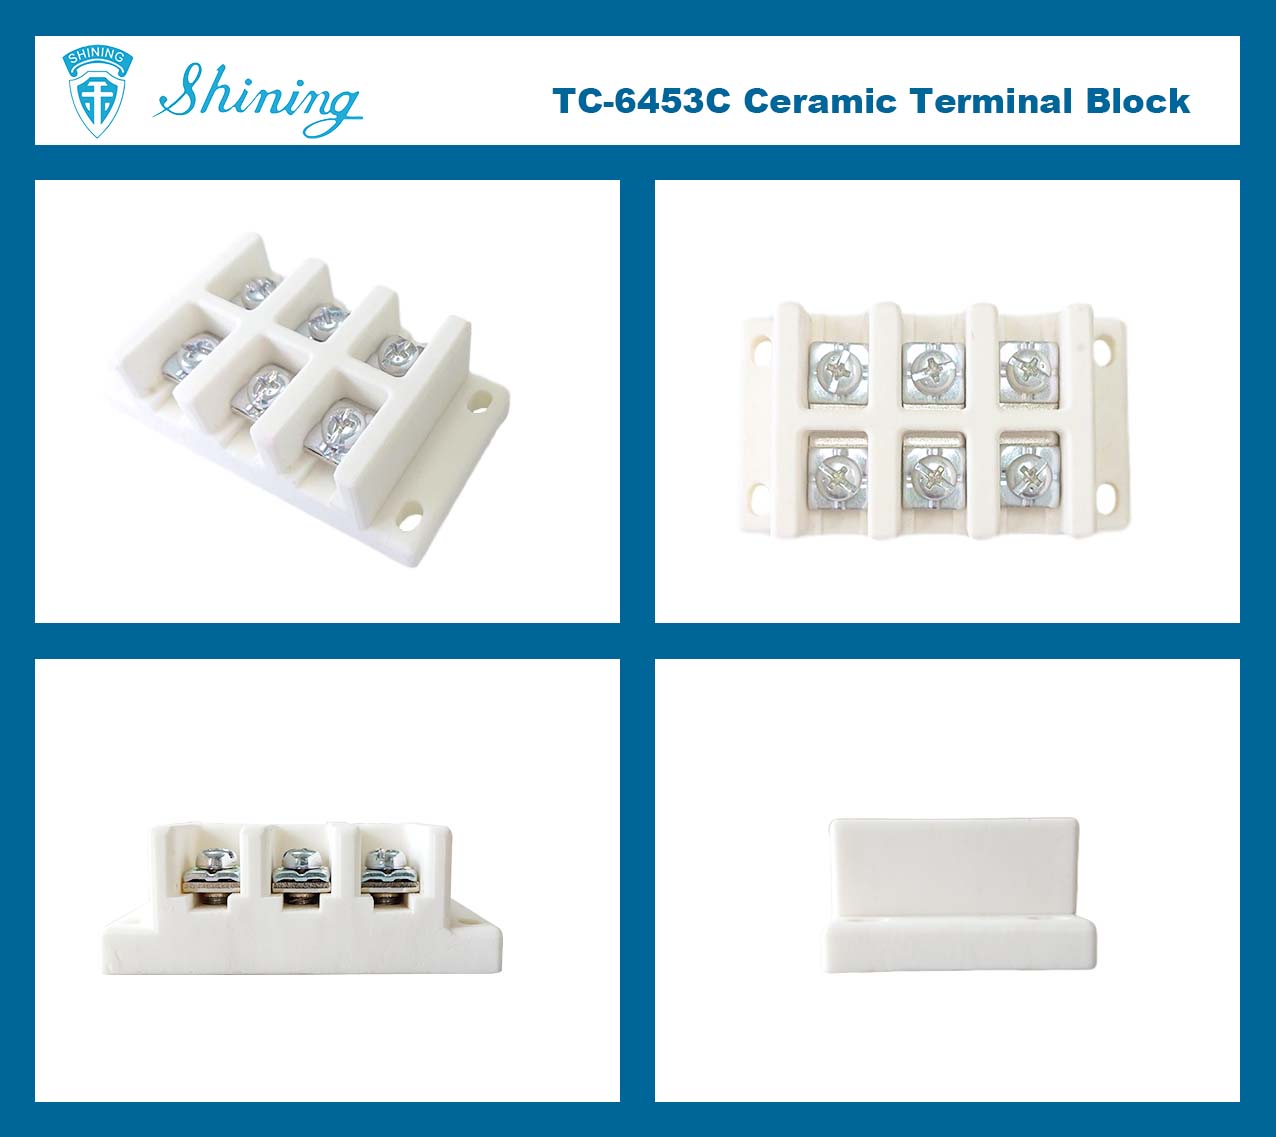 @$600V_30A_Terminal_Block$@TC-6453C_&lt;TC-6453C Монтажен керамичен терминален блок 600V 45A 3 полюса&gt;